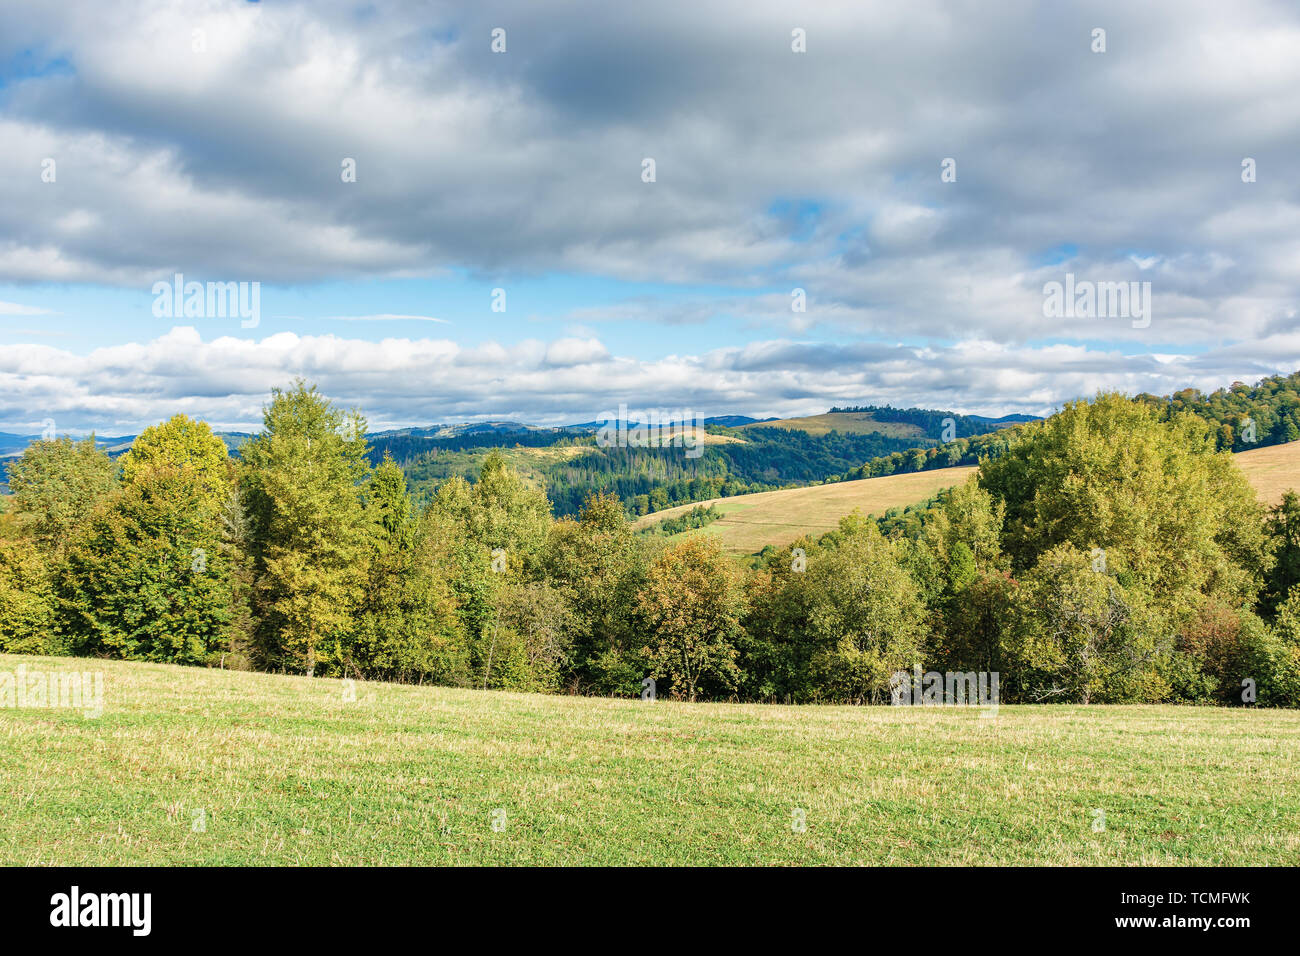 Foresta sul bordo di un prato in montagna. bellissimo scenario delle montagne dei Carpazi a inizio autunno. luminose meteo con le nubi del cielo Foto Stock